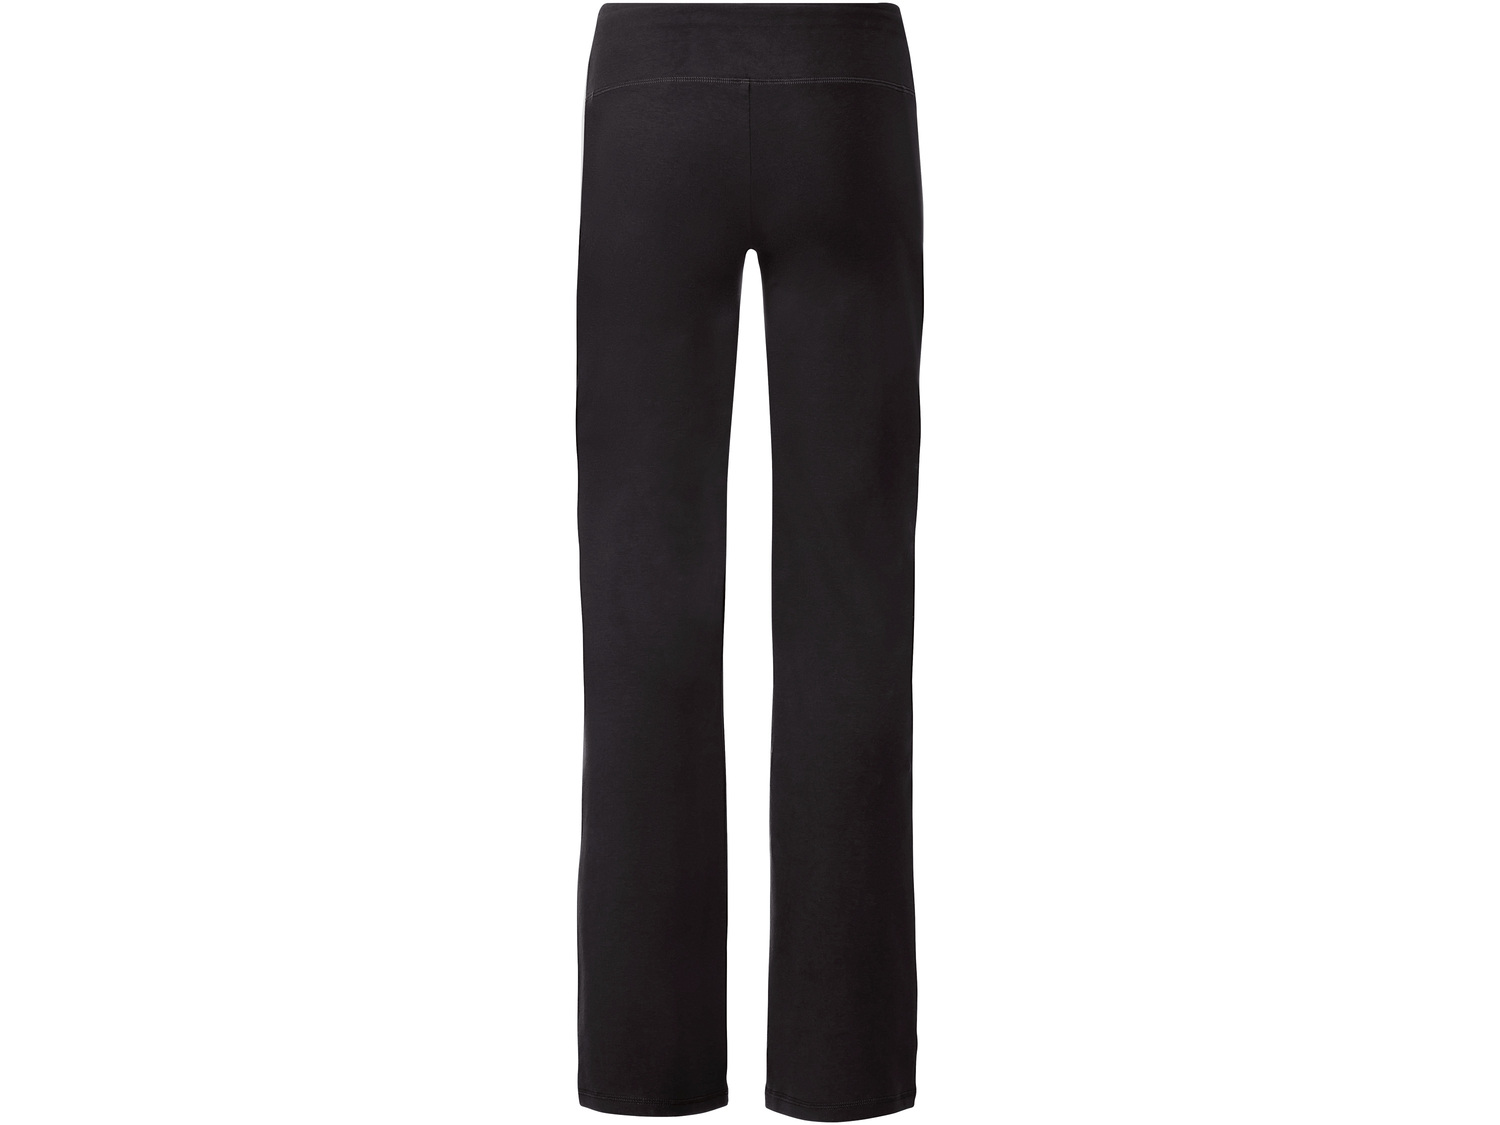 Spodnie funkcyjne damskie Crivit, cena 24,99 PLN 
- rozmiary: S-L
- 95% bawełny, ...